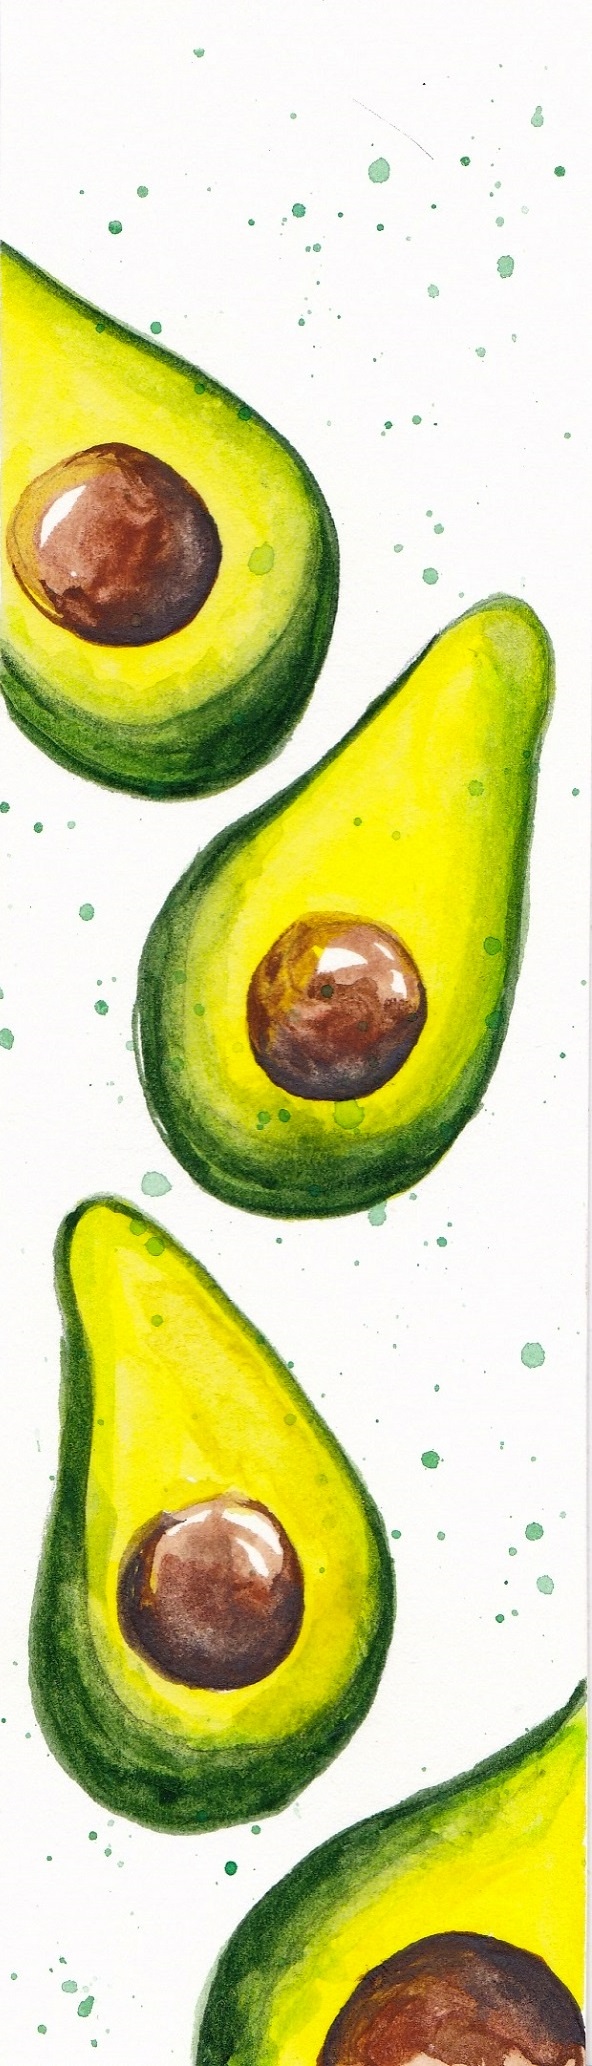 Semn de carte: Avocado